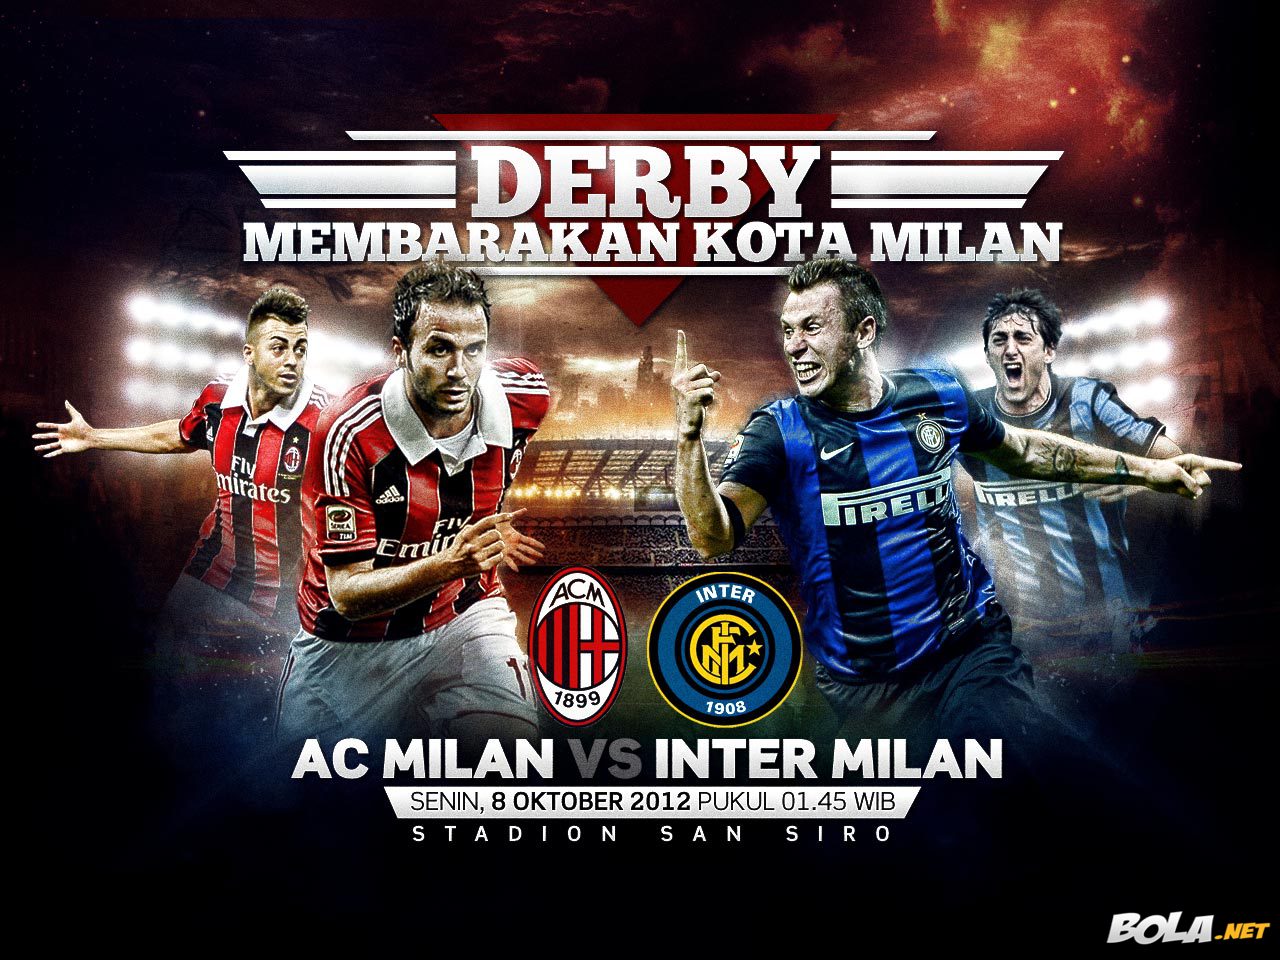 Download Wallpaper AC Milan Vs Inter Milan Bolanet